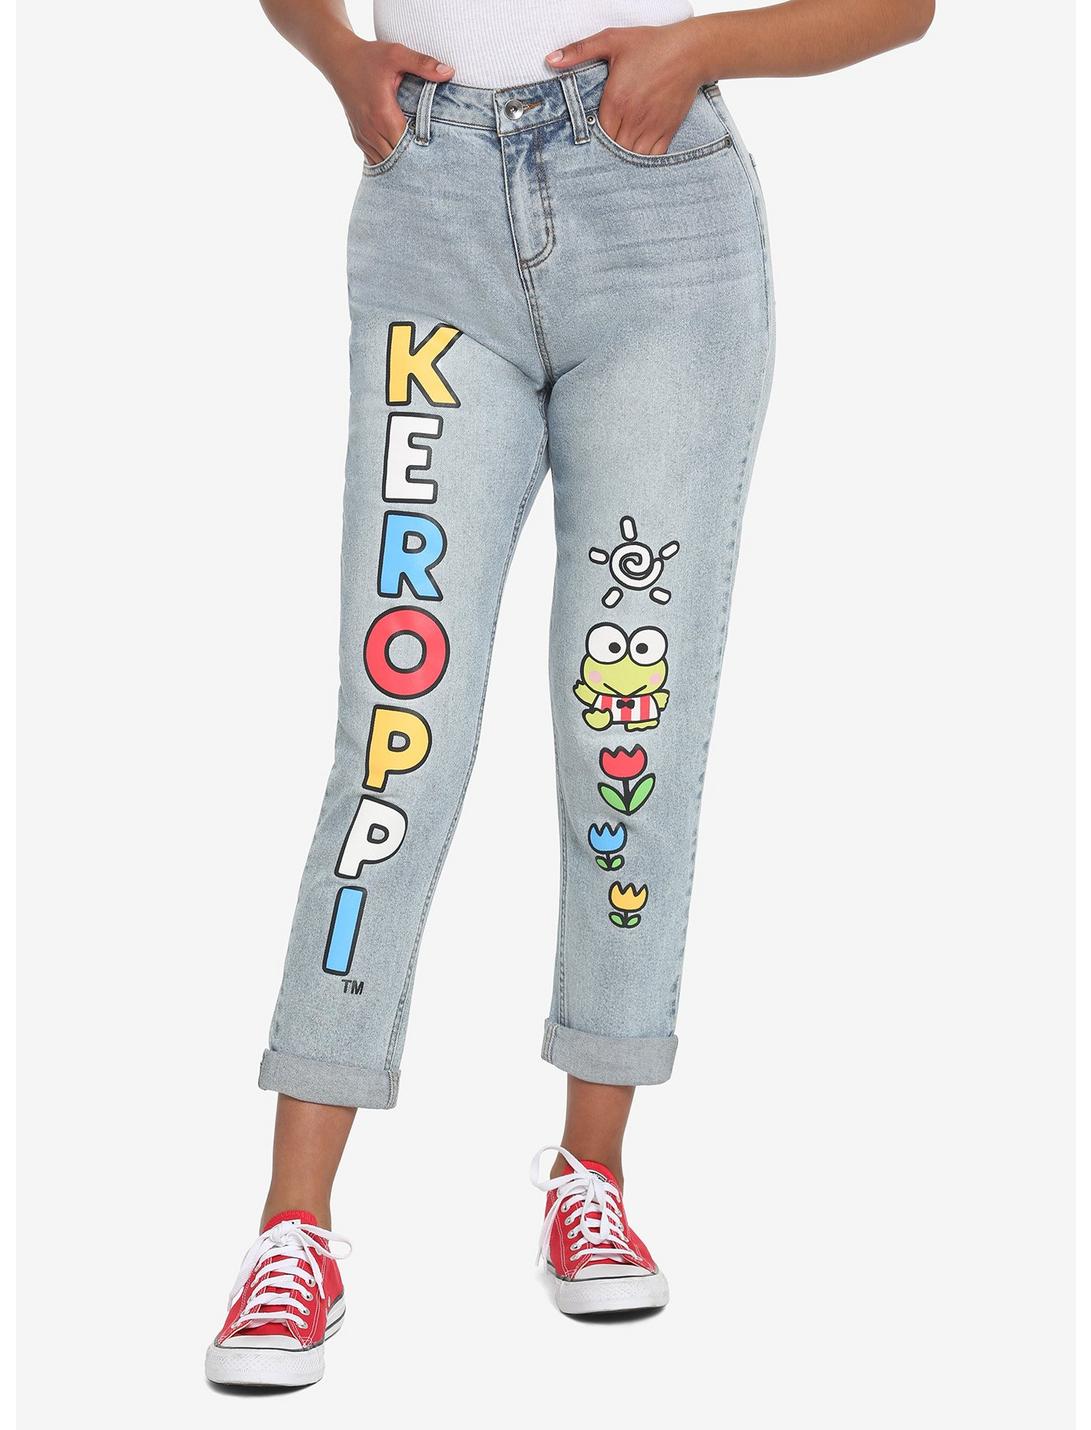 Keroppi Name Mom Jeans, LIGHT WASH, hi-res